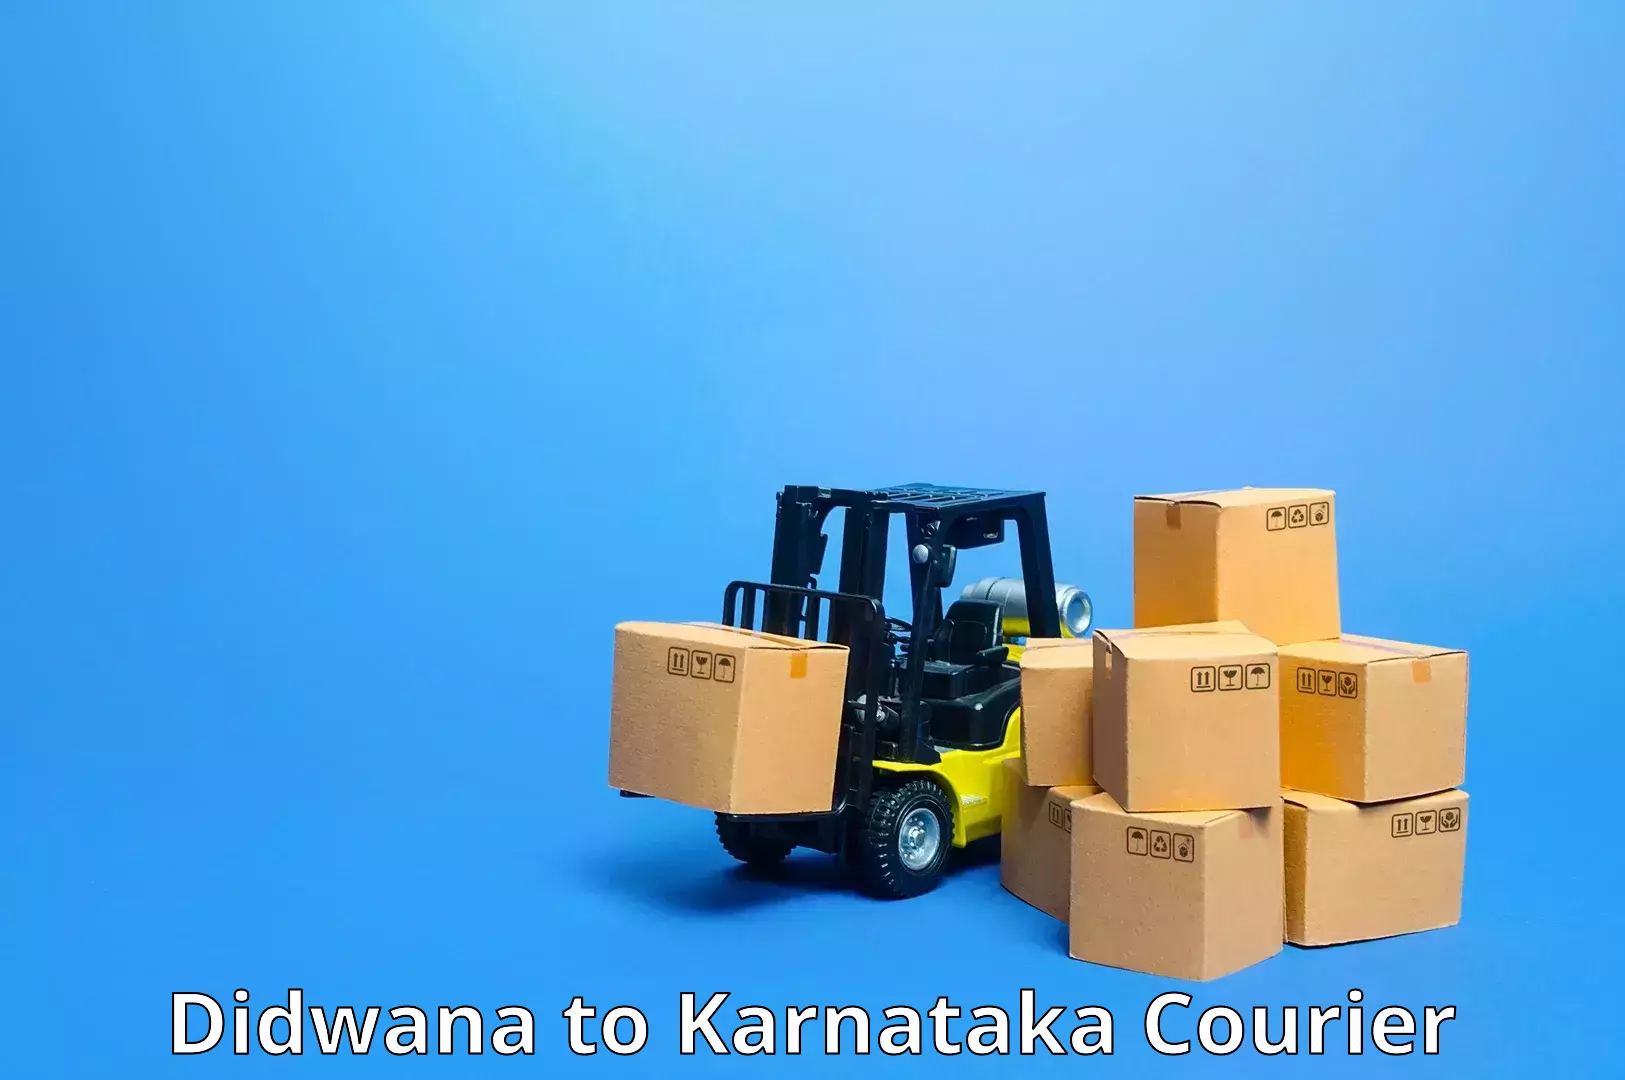 Logistics service provider Didwana to Karnataka